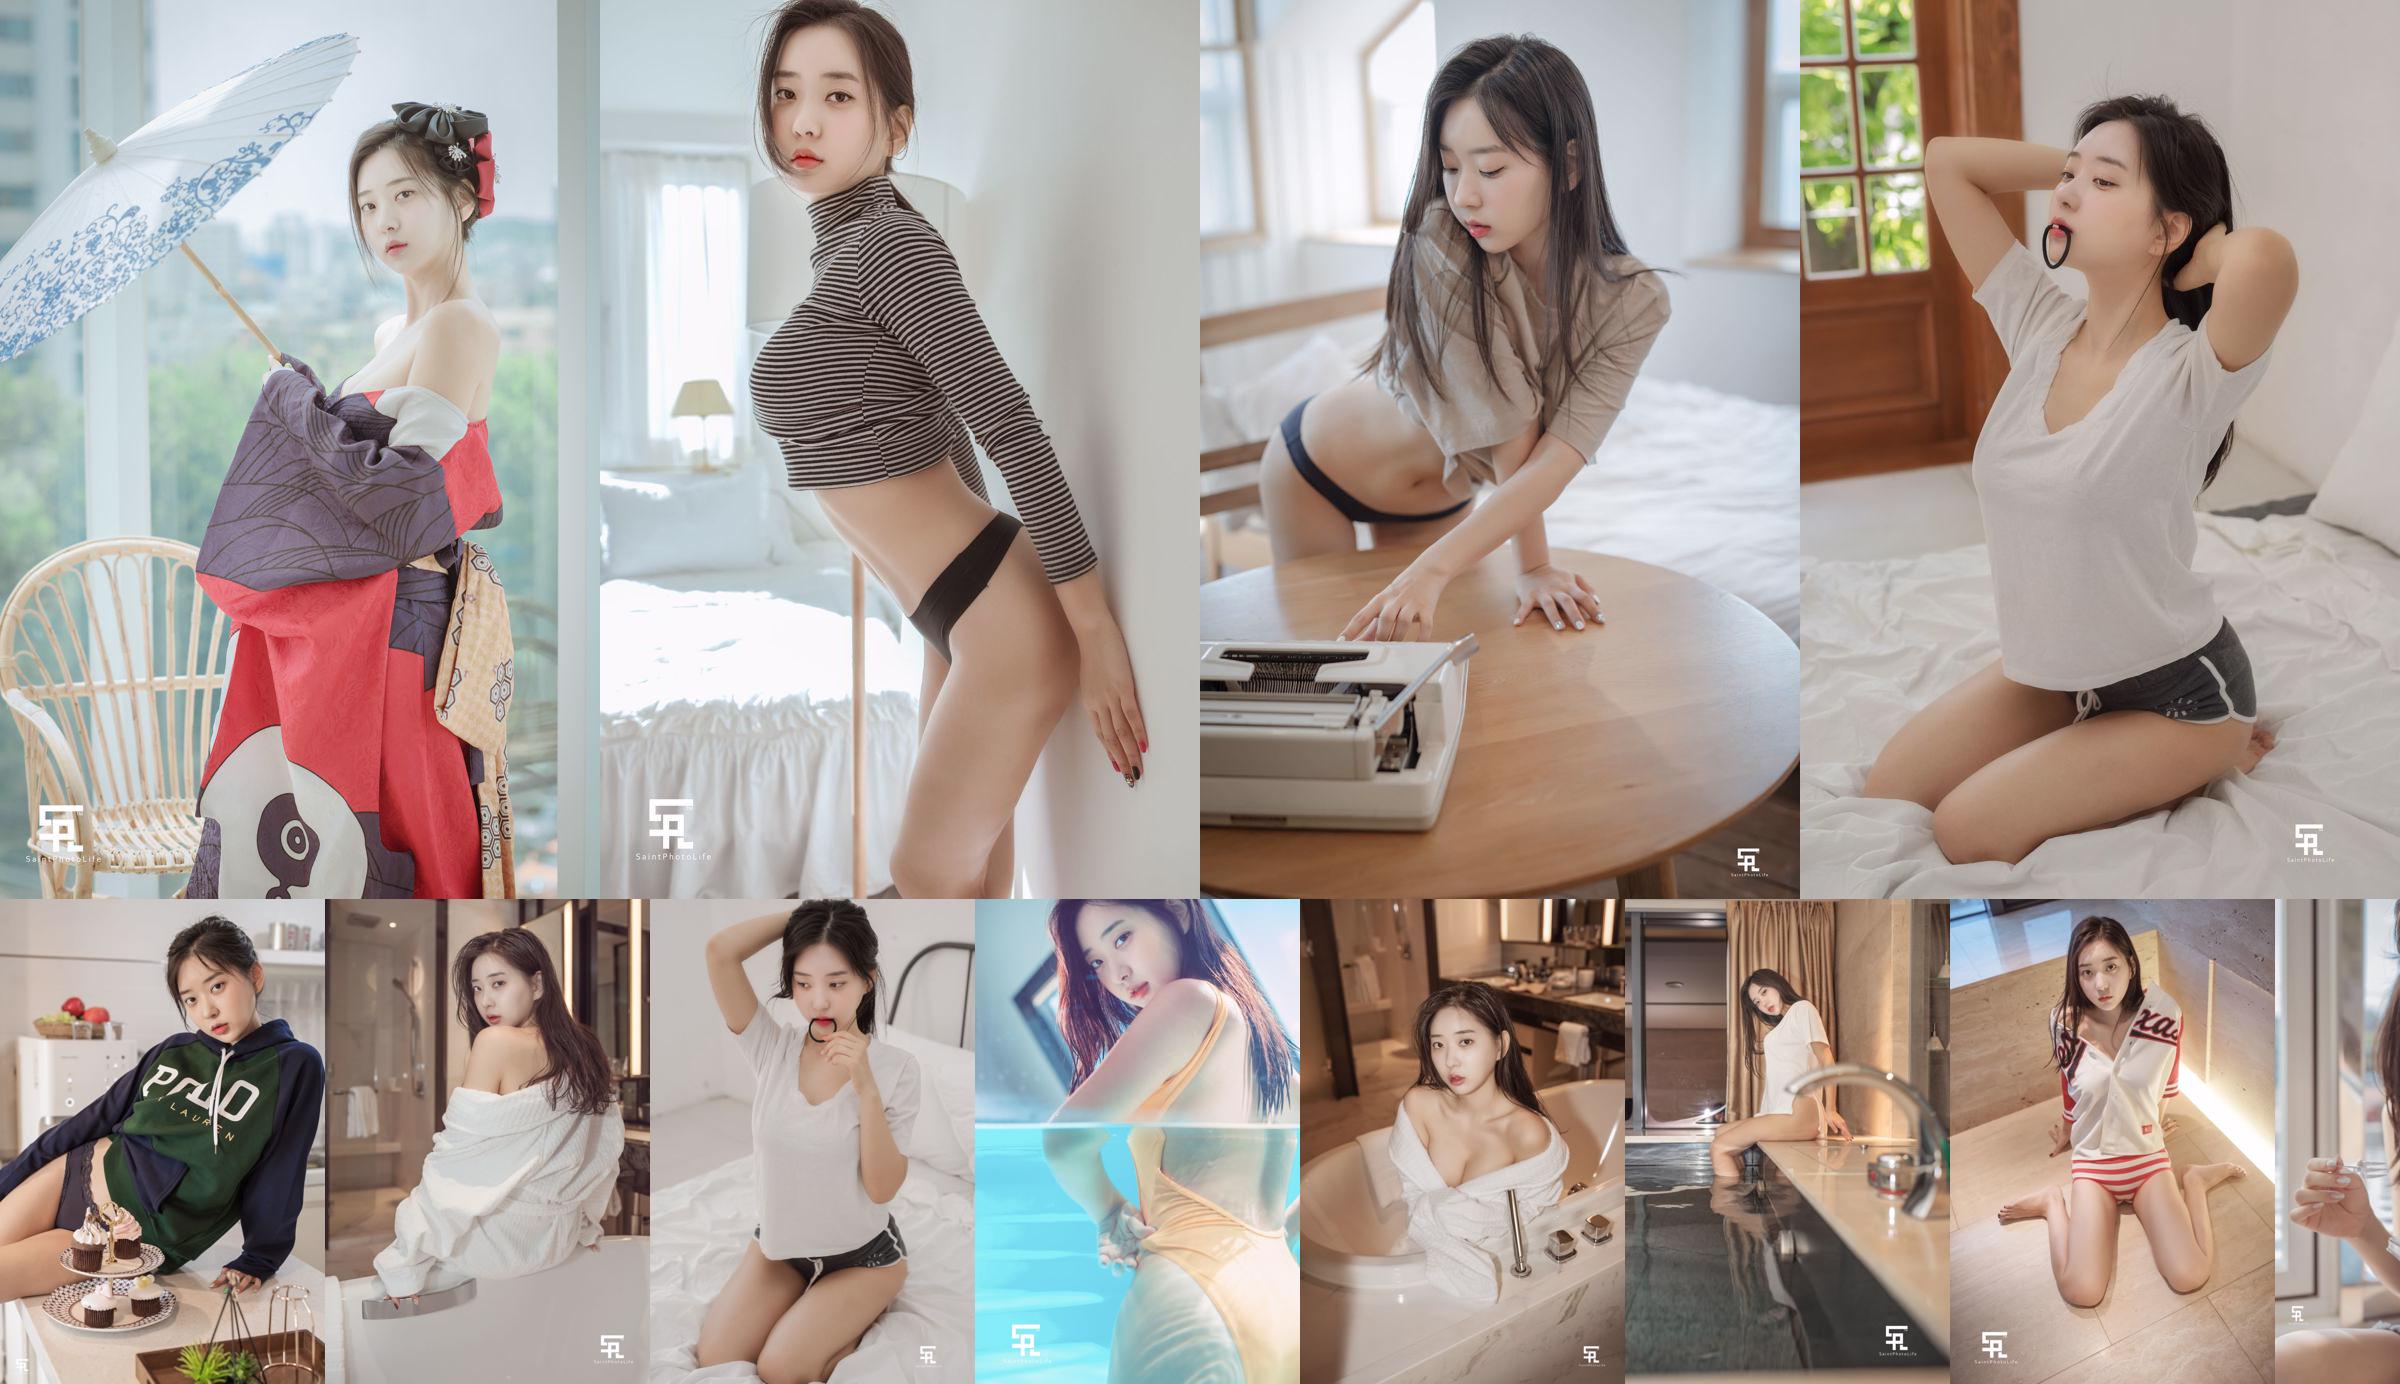 [saintphotolife] - Корейская девушка Зенни, фото 2019, лето, часть 1 No.894270 Страница 1